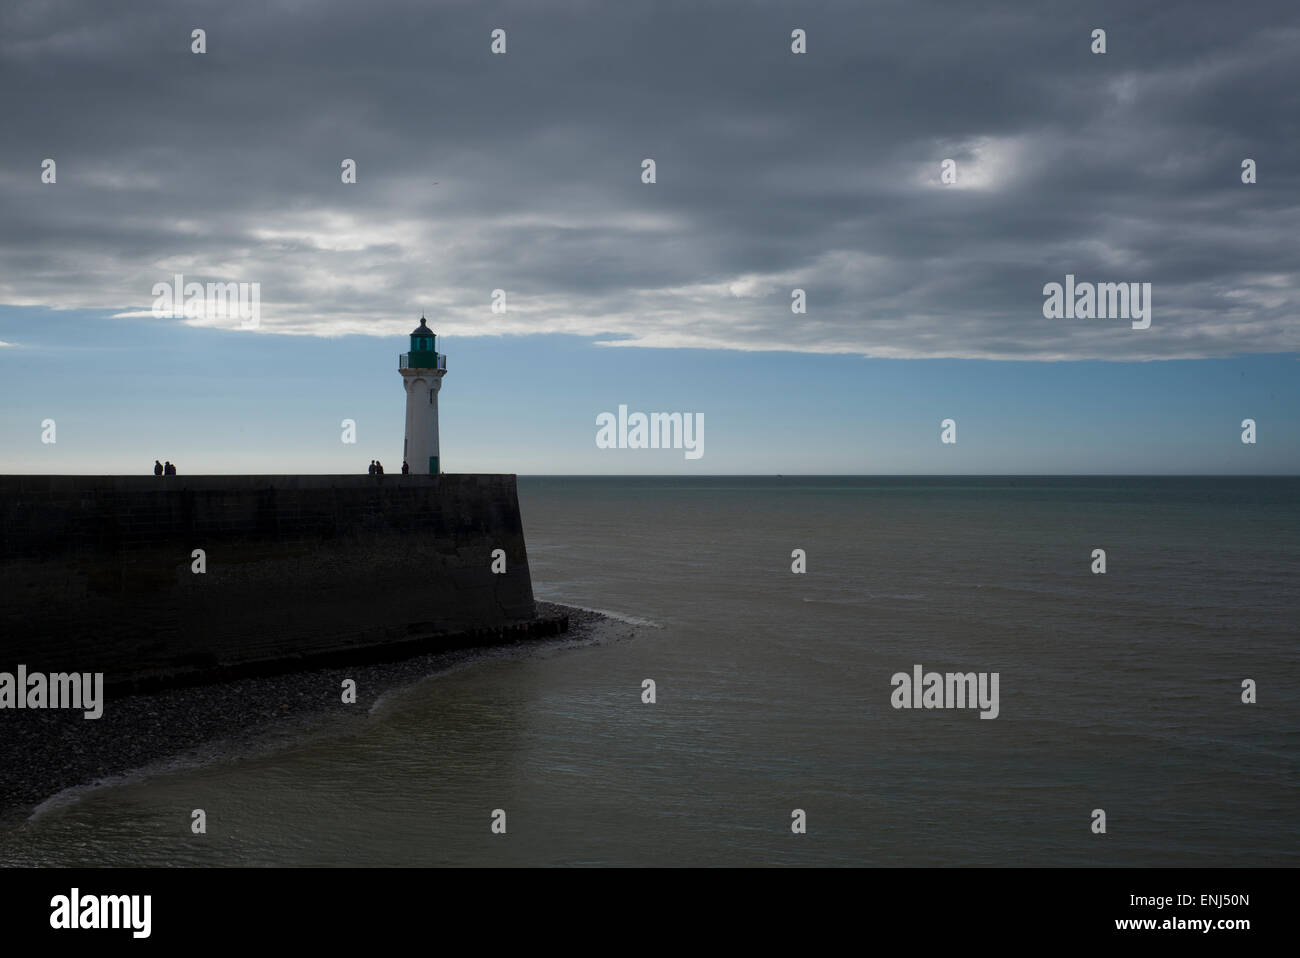 Faro e parete del porto, mare calmo, nubi minacciose, persone in silhouette Foto Stock